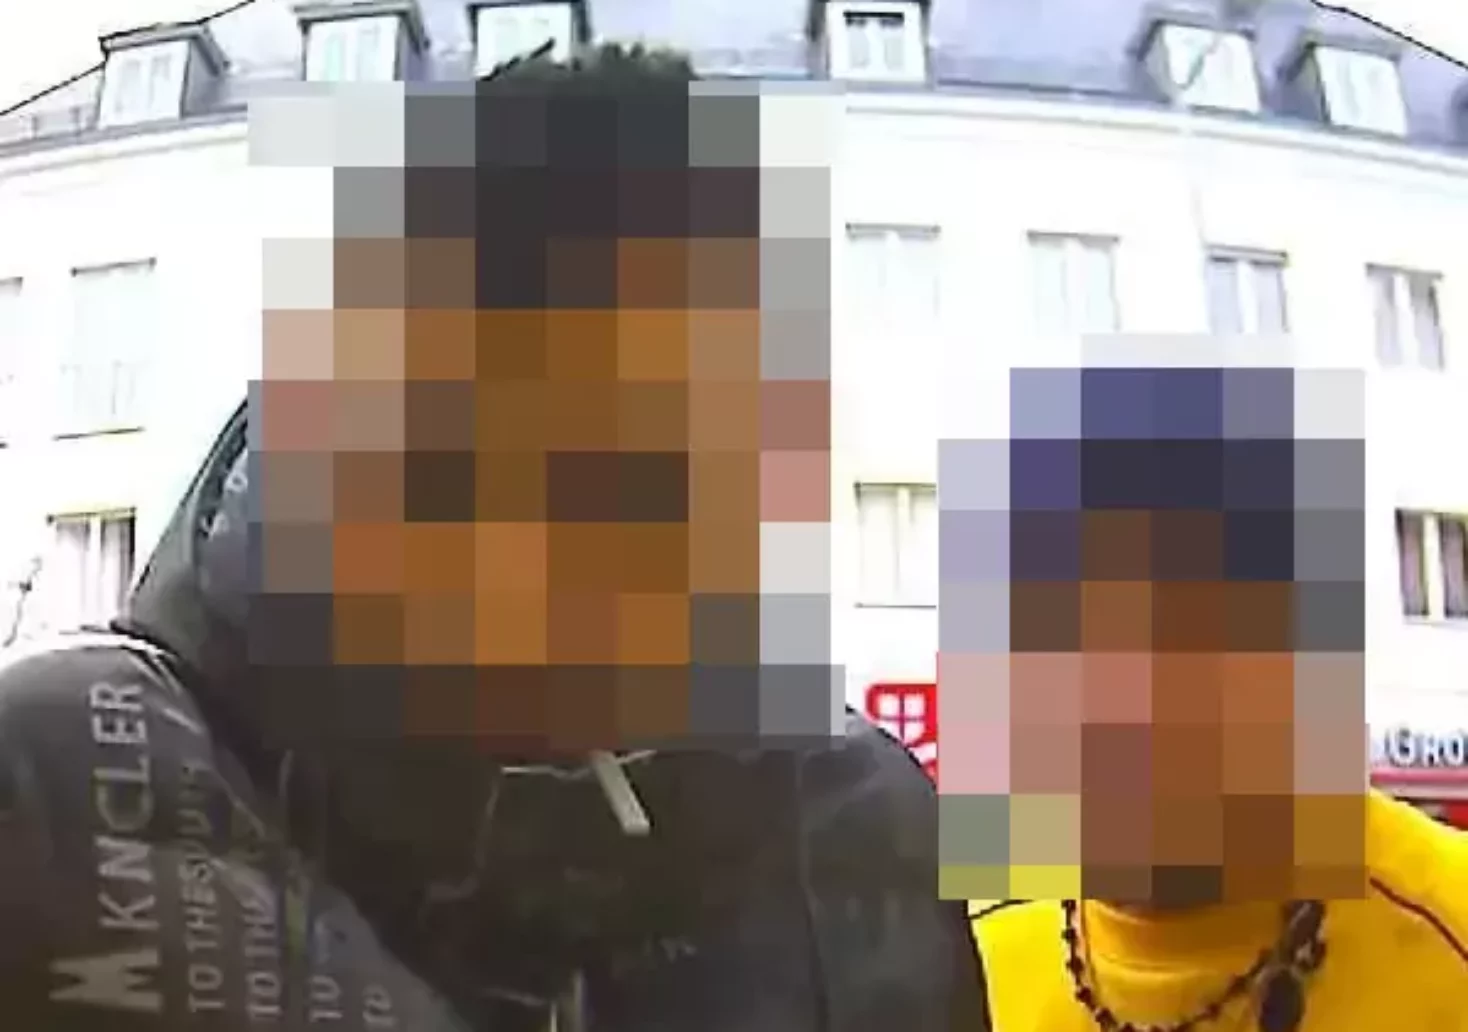 Brieftasche gestohlen: Polizei sucht nach diesen beiden Männern